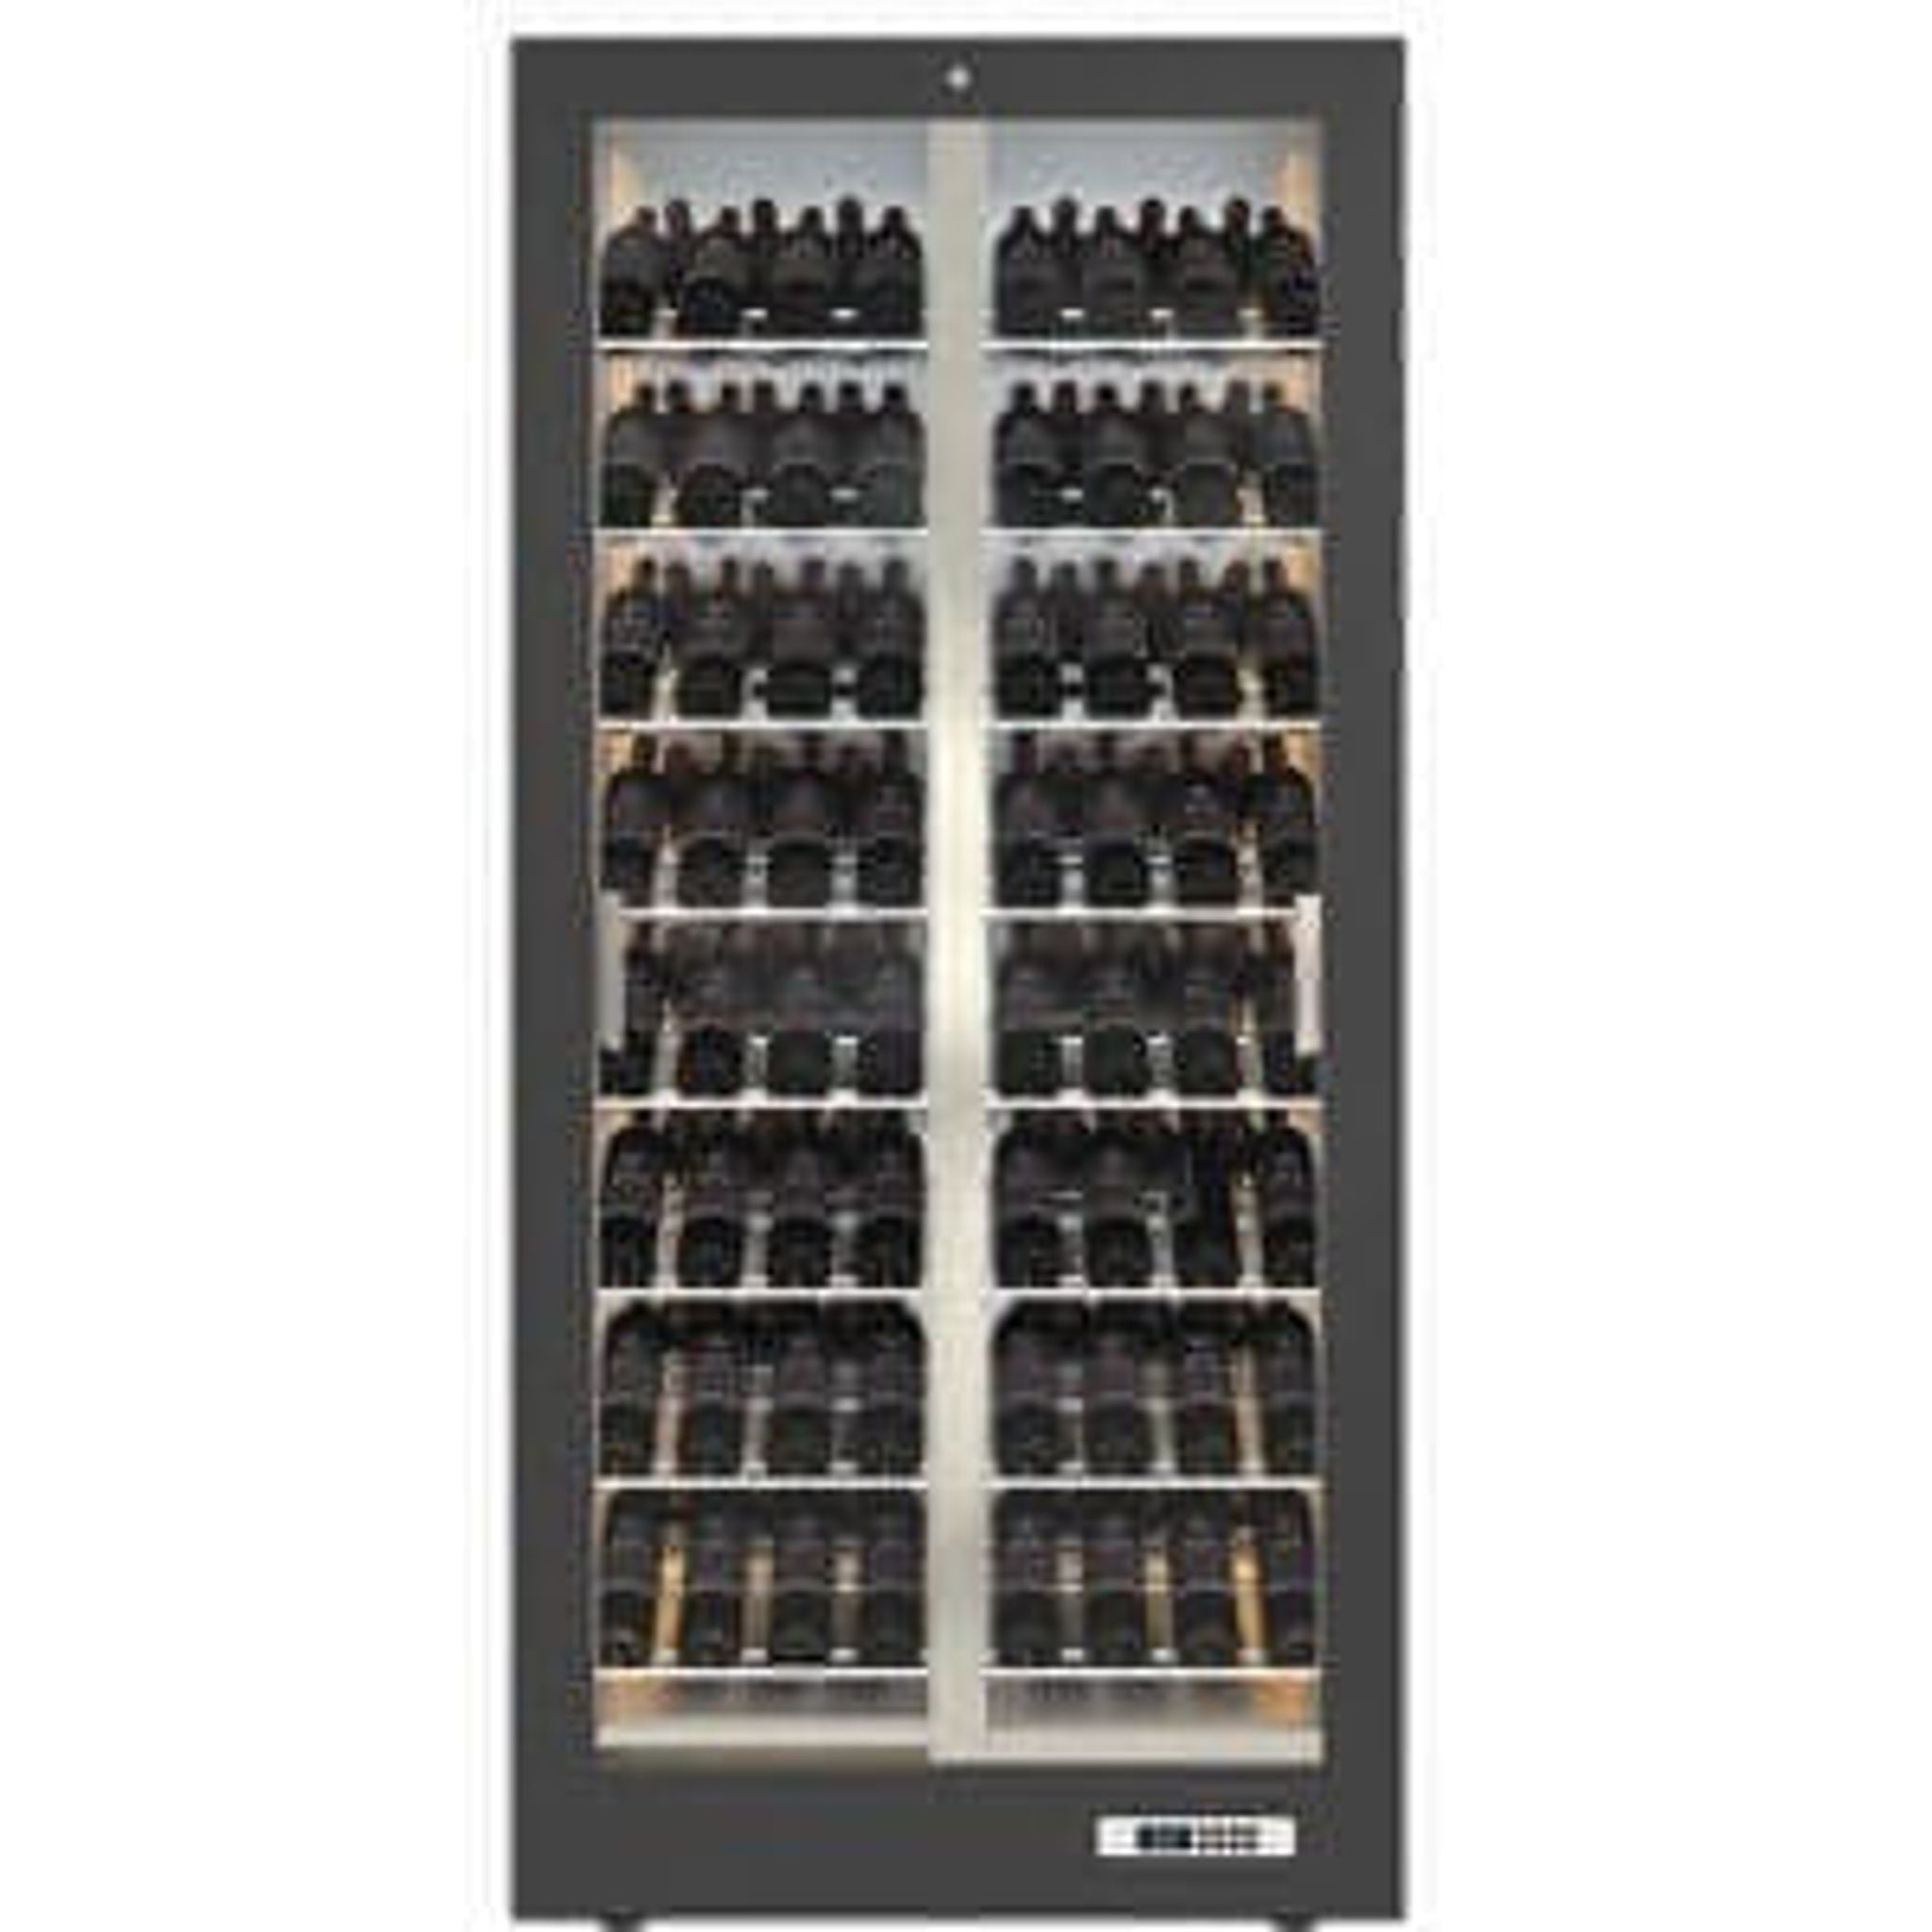 Teca Vino - Wine Wall TV12 - Tilted Shelving - For Restaurant Use